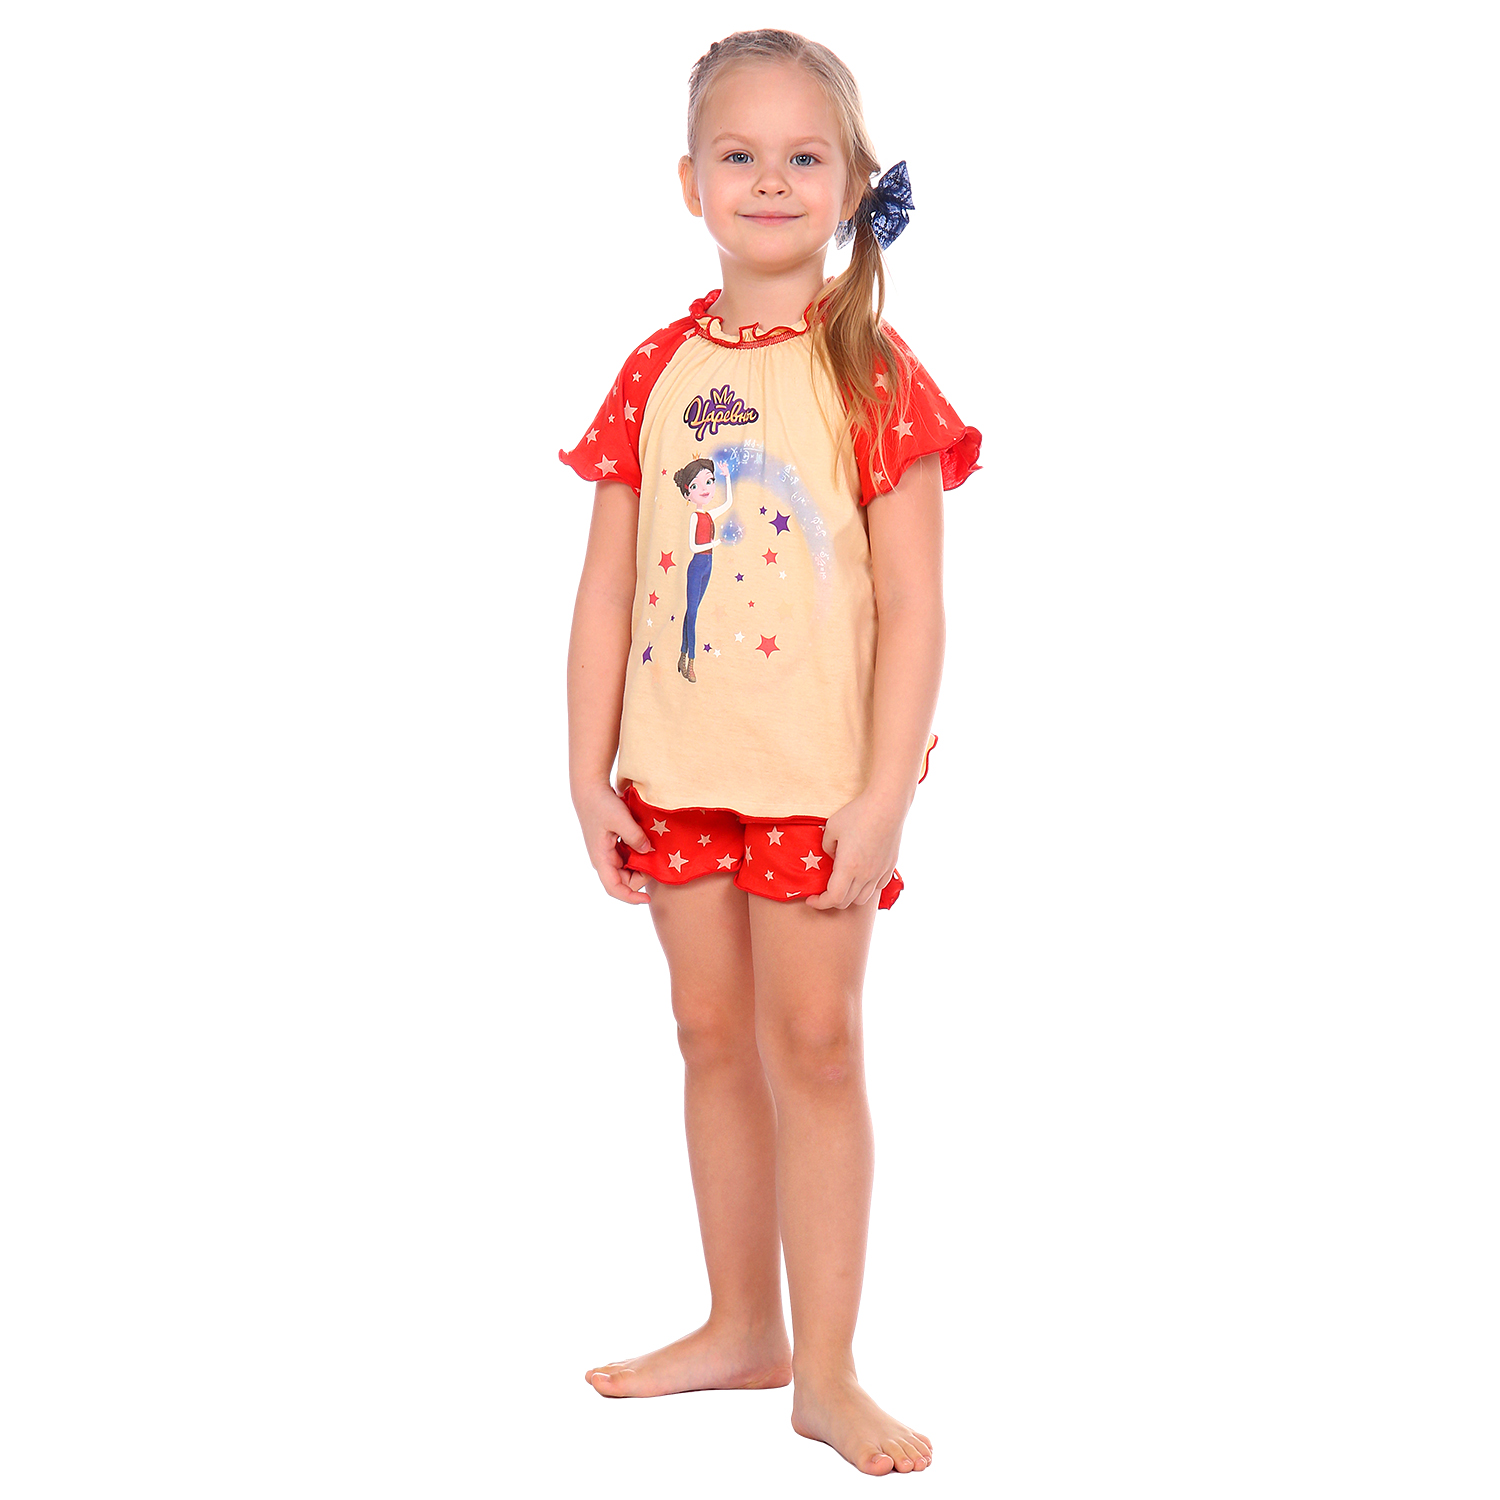 Пижама Детская Одежда S0412К/молочный_красный - фото 1